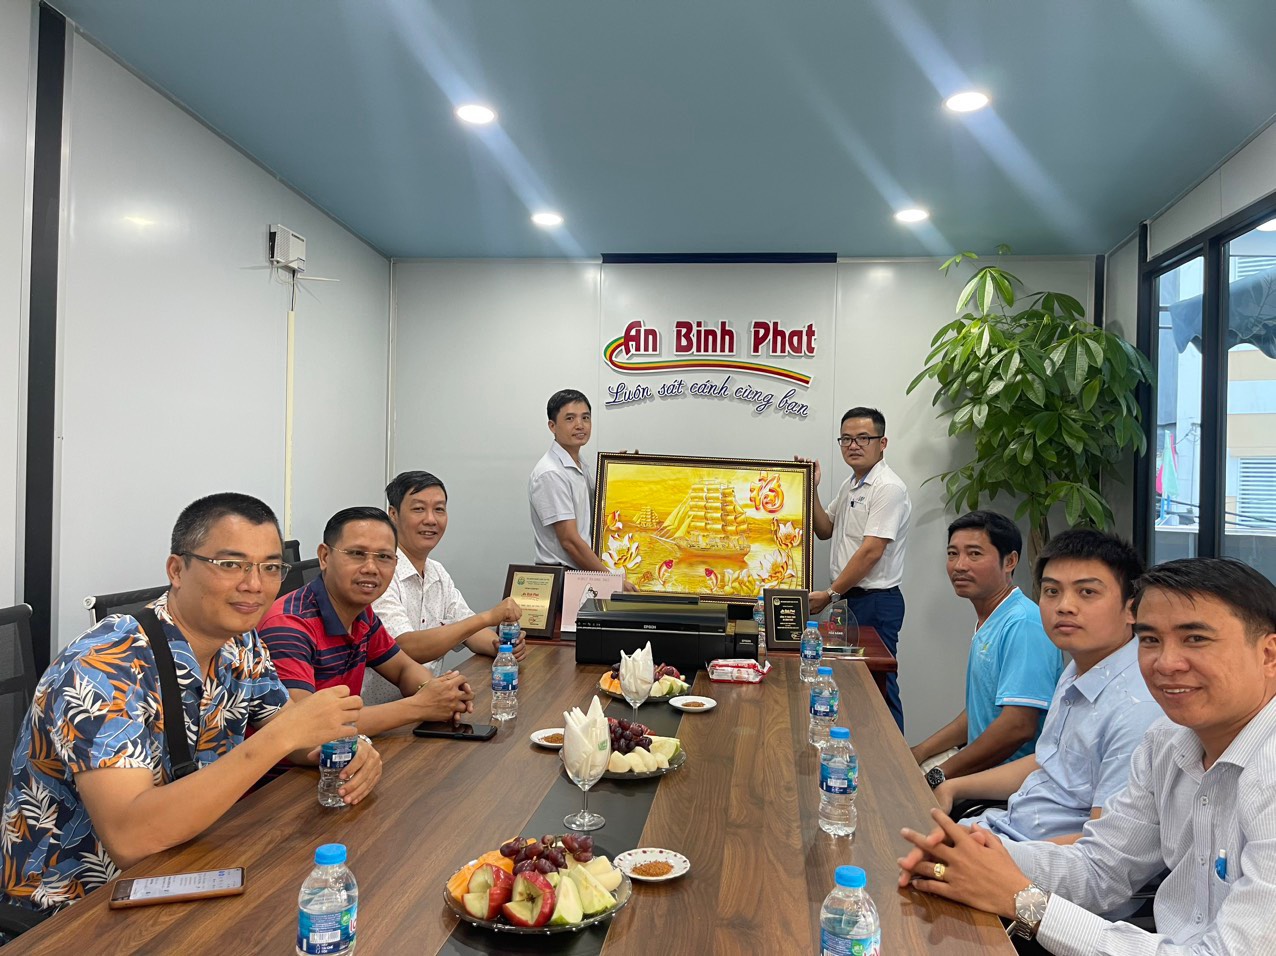 Đại diện lâm thời Hội doanh nhân Thái Bình Miền Nam thăm doanh nghiệp thành viên - Công ty An Bình Phát